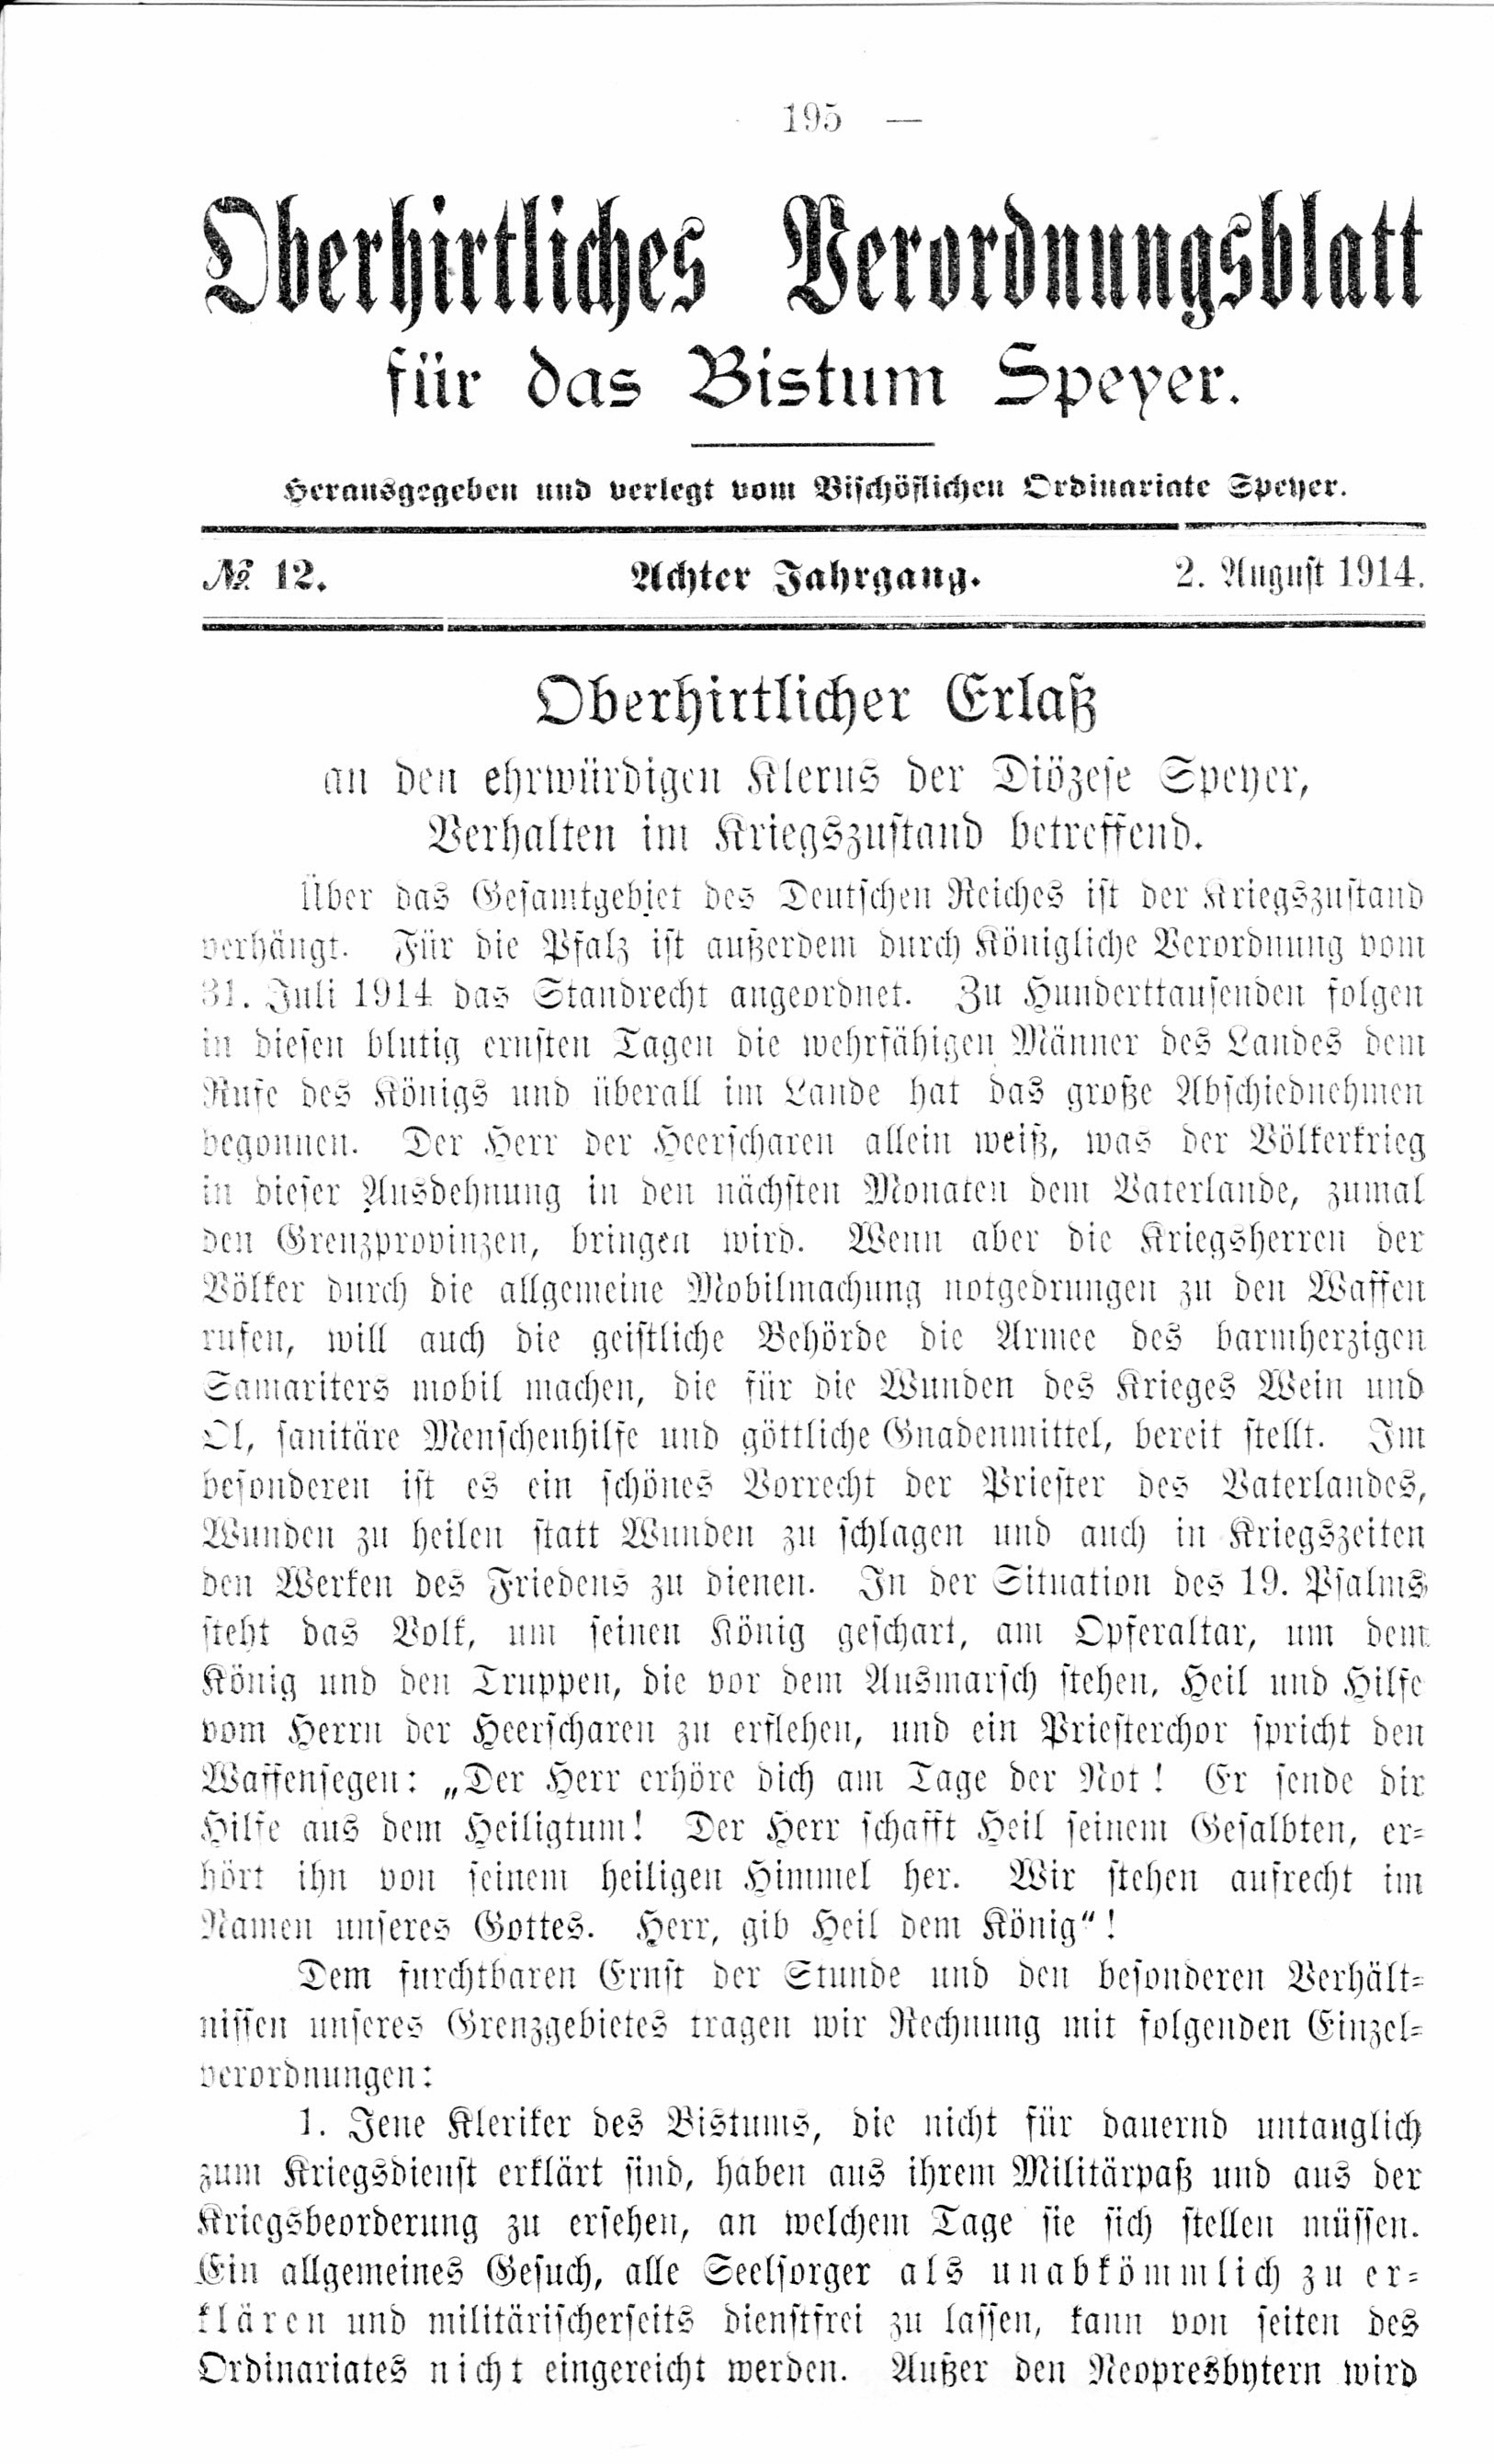 Oberhirtliches Verordnungsblatt für das Bistum Speyer, 2. August 1914 (Historisches Museum der Pfalz, Speyer CC BY)